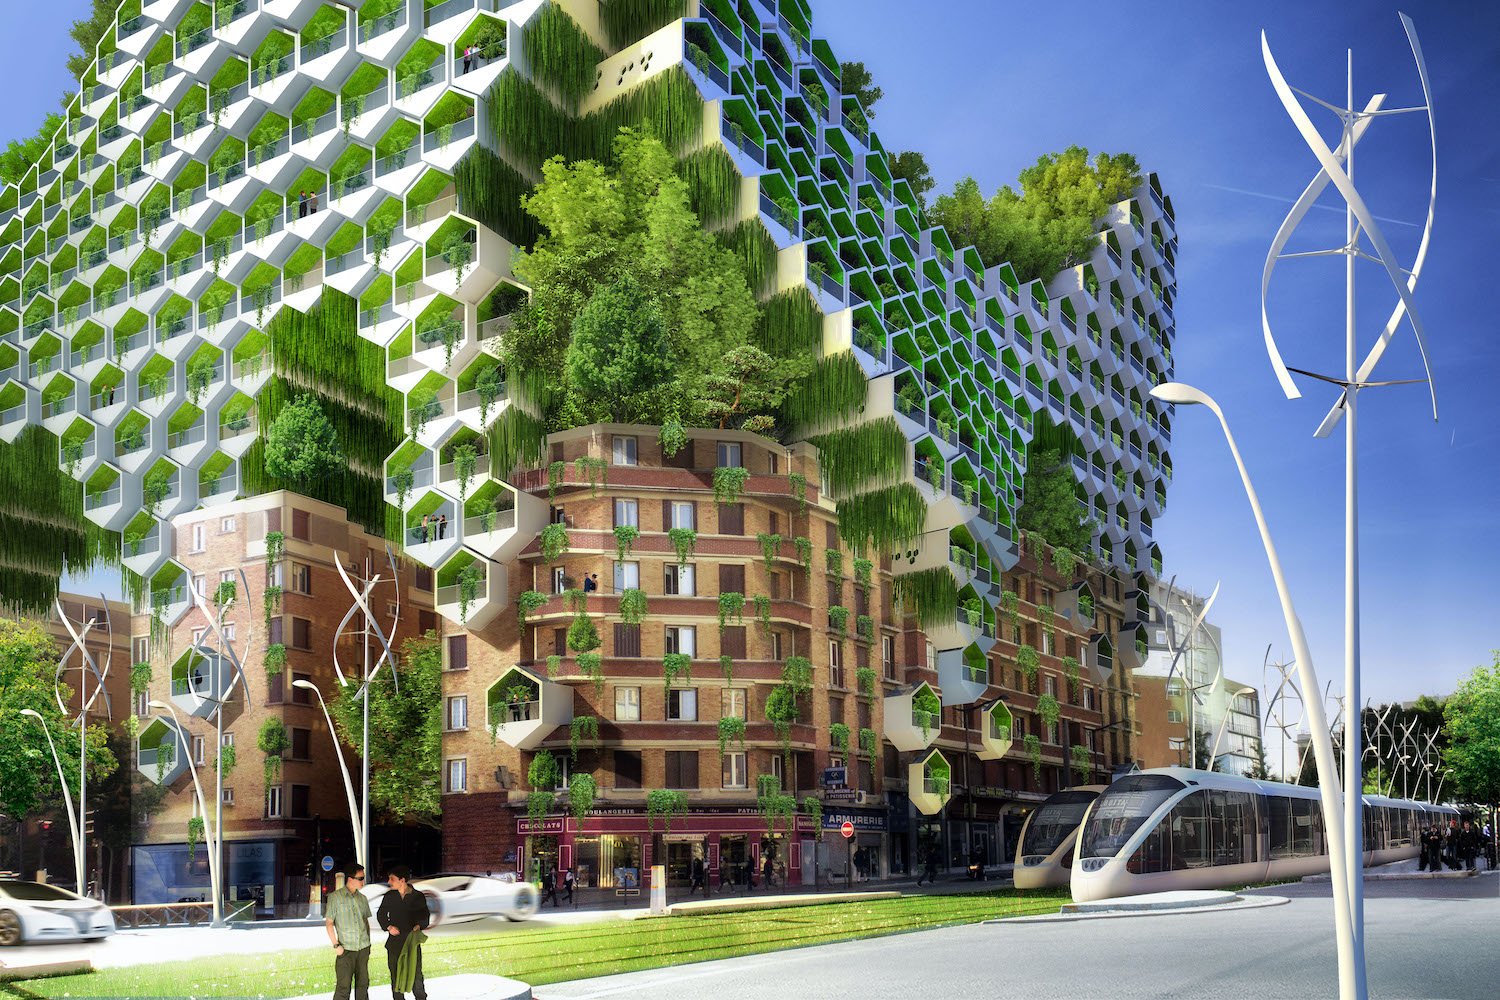 Te imaginas cómo serán las ciudades en el futuro? Descubrimos París en el  2050